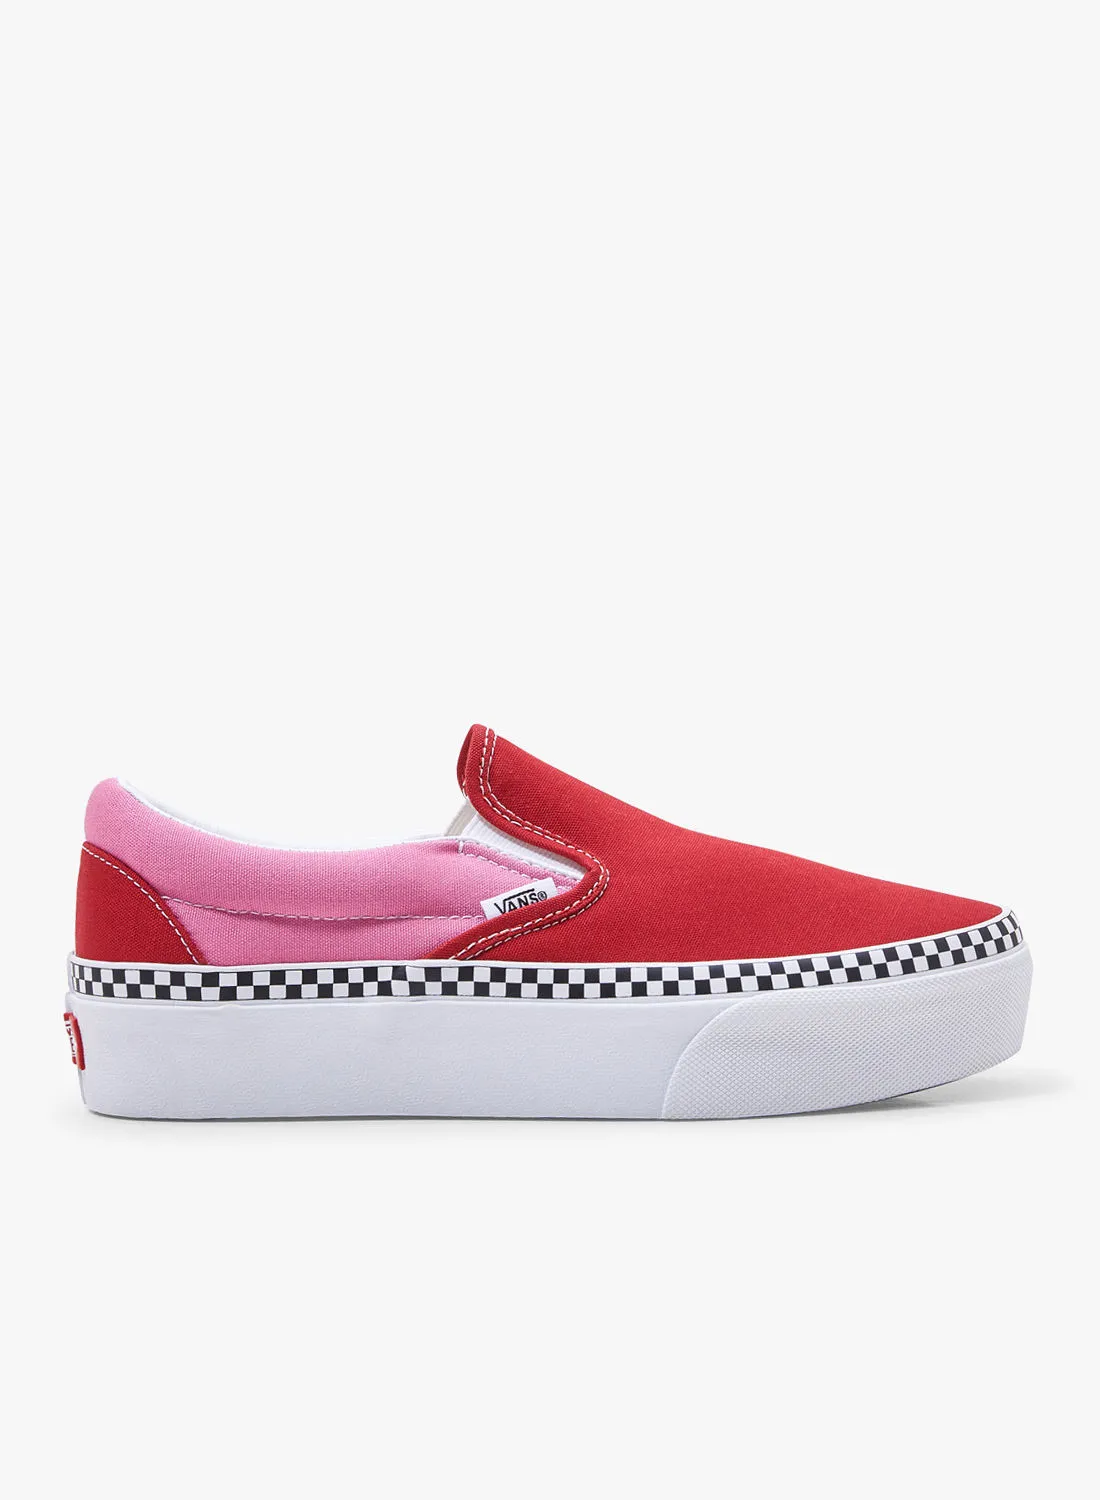 حذاء فانس UA كلاسيكي سهل الارتداء أحمر / وردي أحمر / وردي